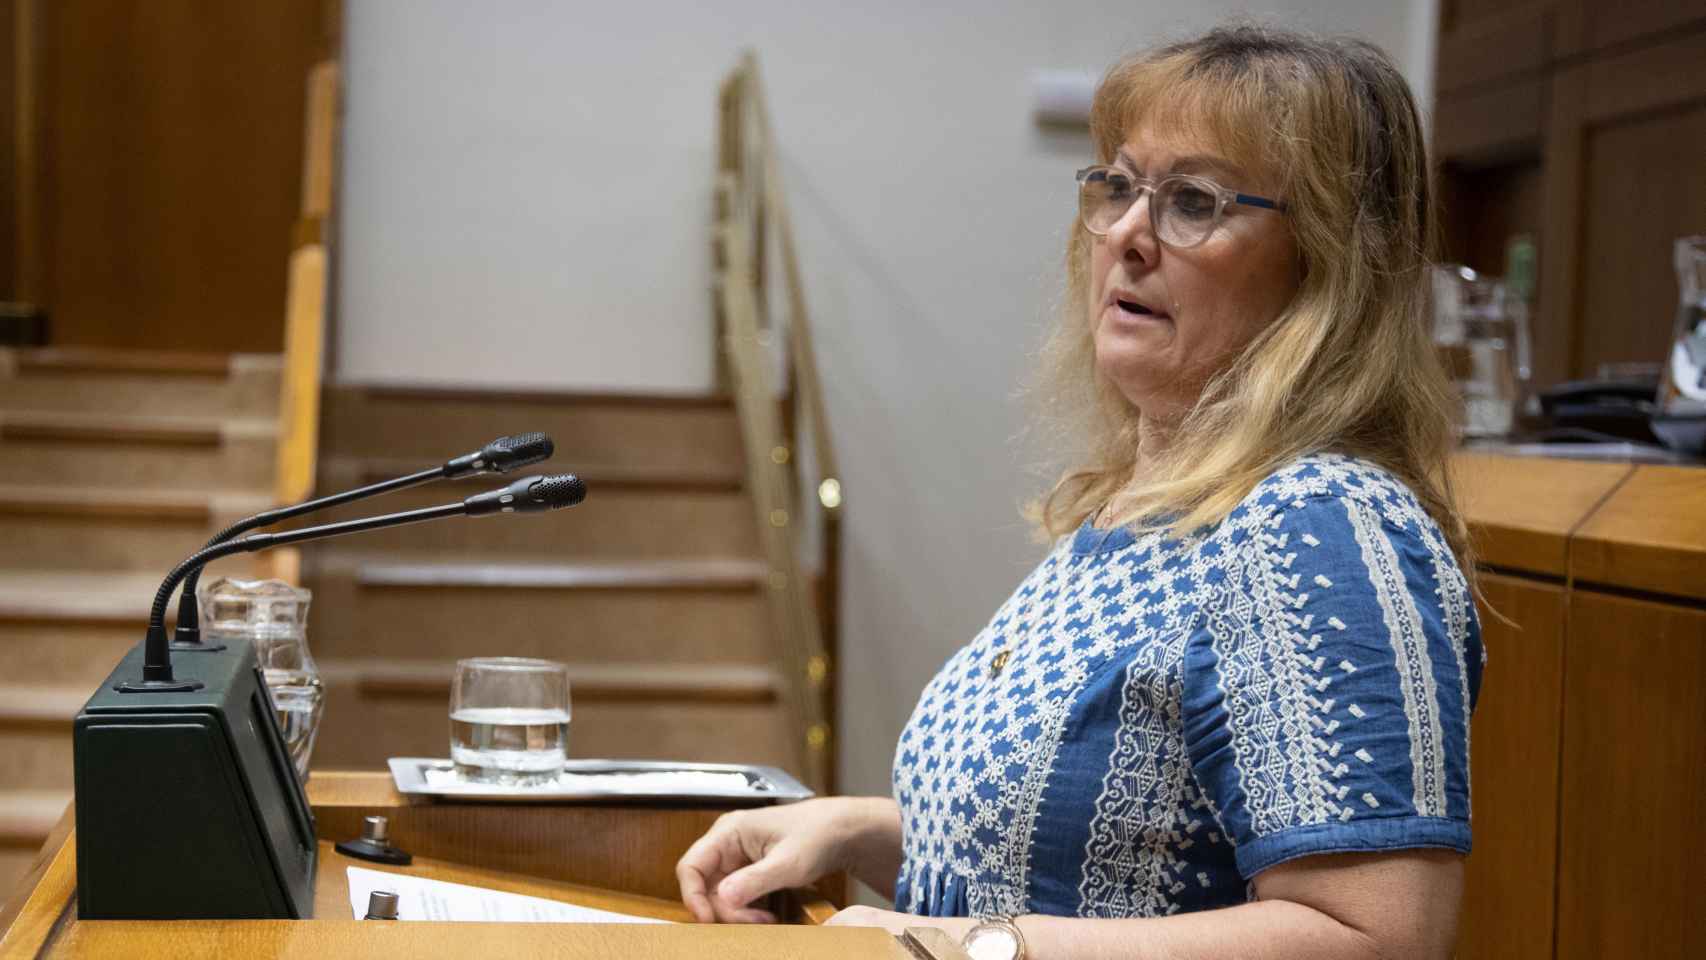 La parlamentaria del PSE-EE, Gloria Sánchez, durante su intervención este jueves en el Parlamento vasco / Legebiltzarra